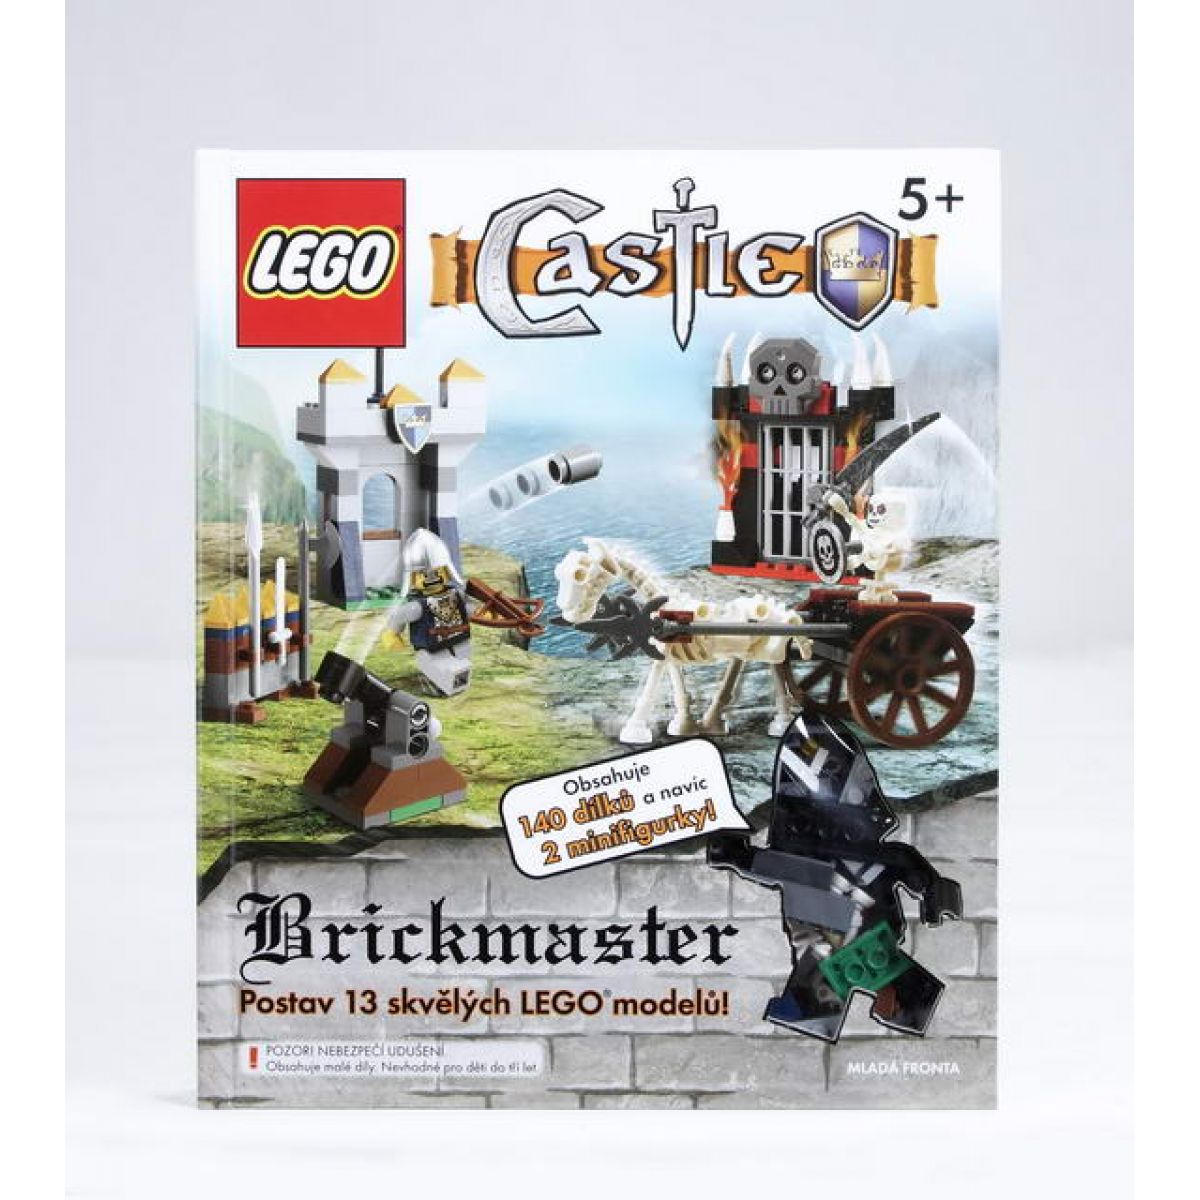 Mladá fronta 0037667 LEGO Brickmasters Castle